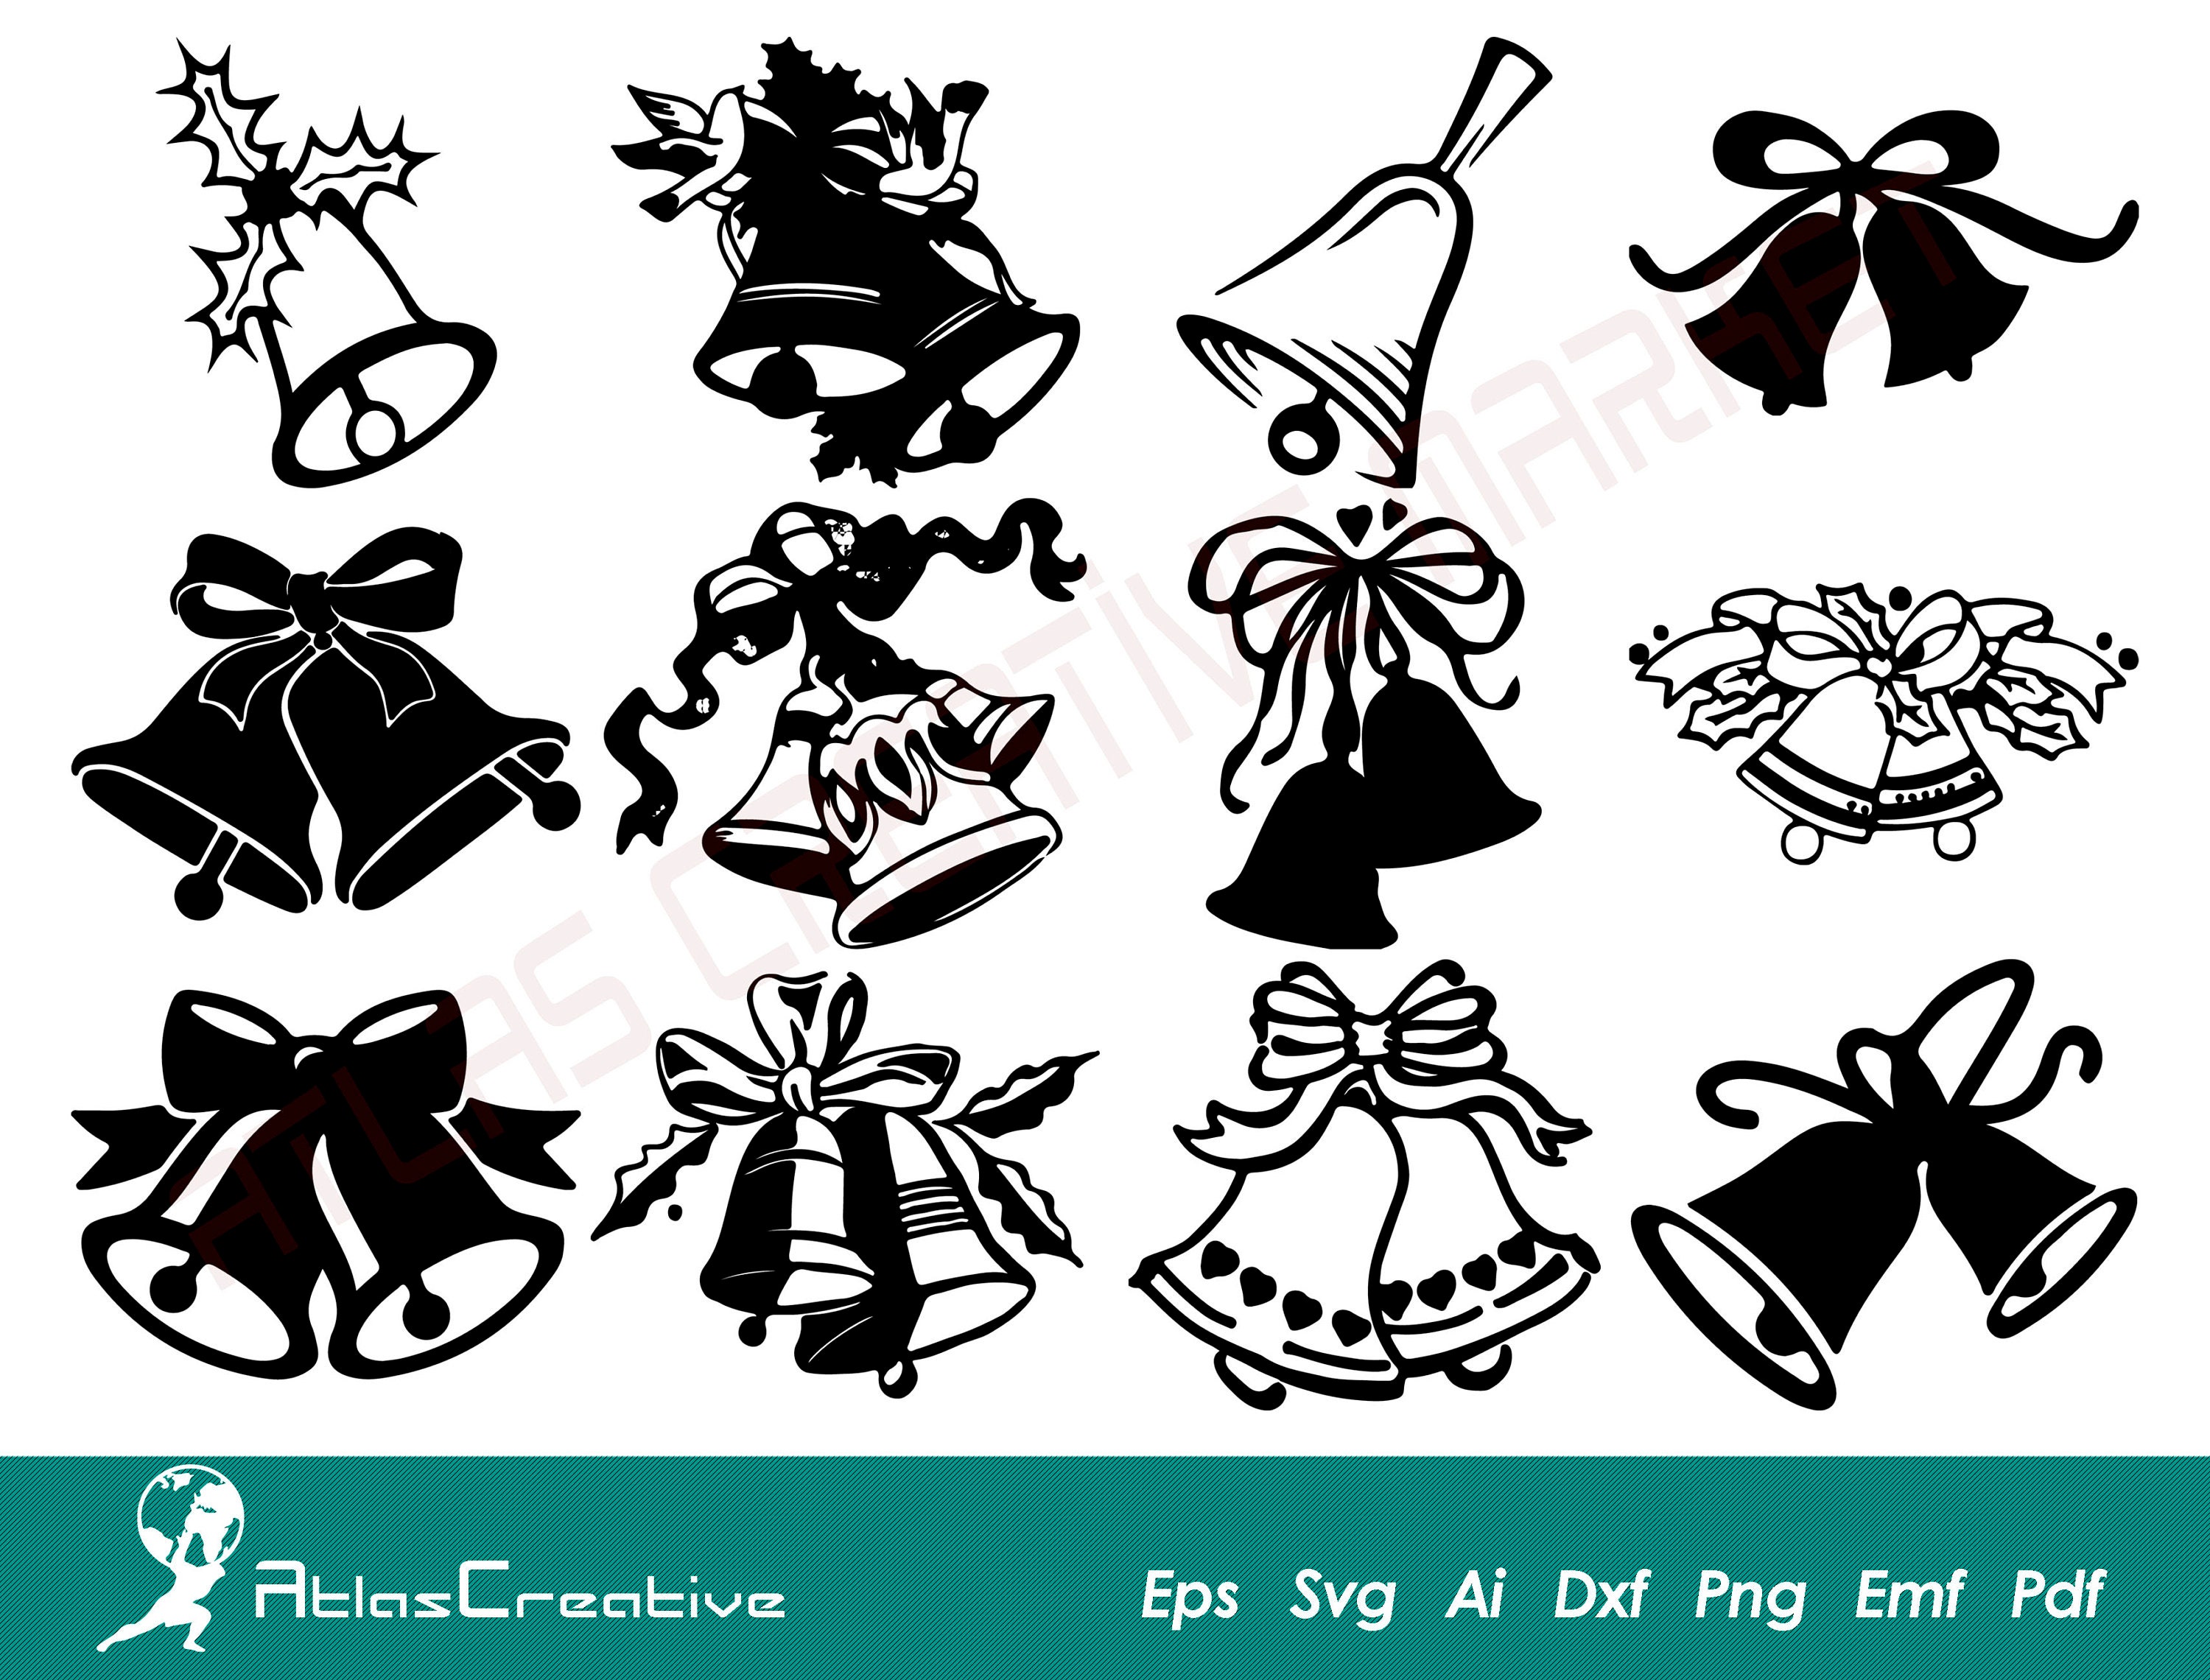 Jingle bells svg, Christmas bells image, svg, png, eps, dxf, pdf